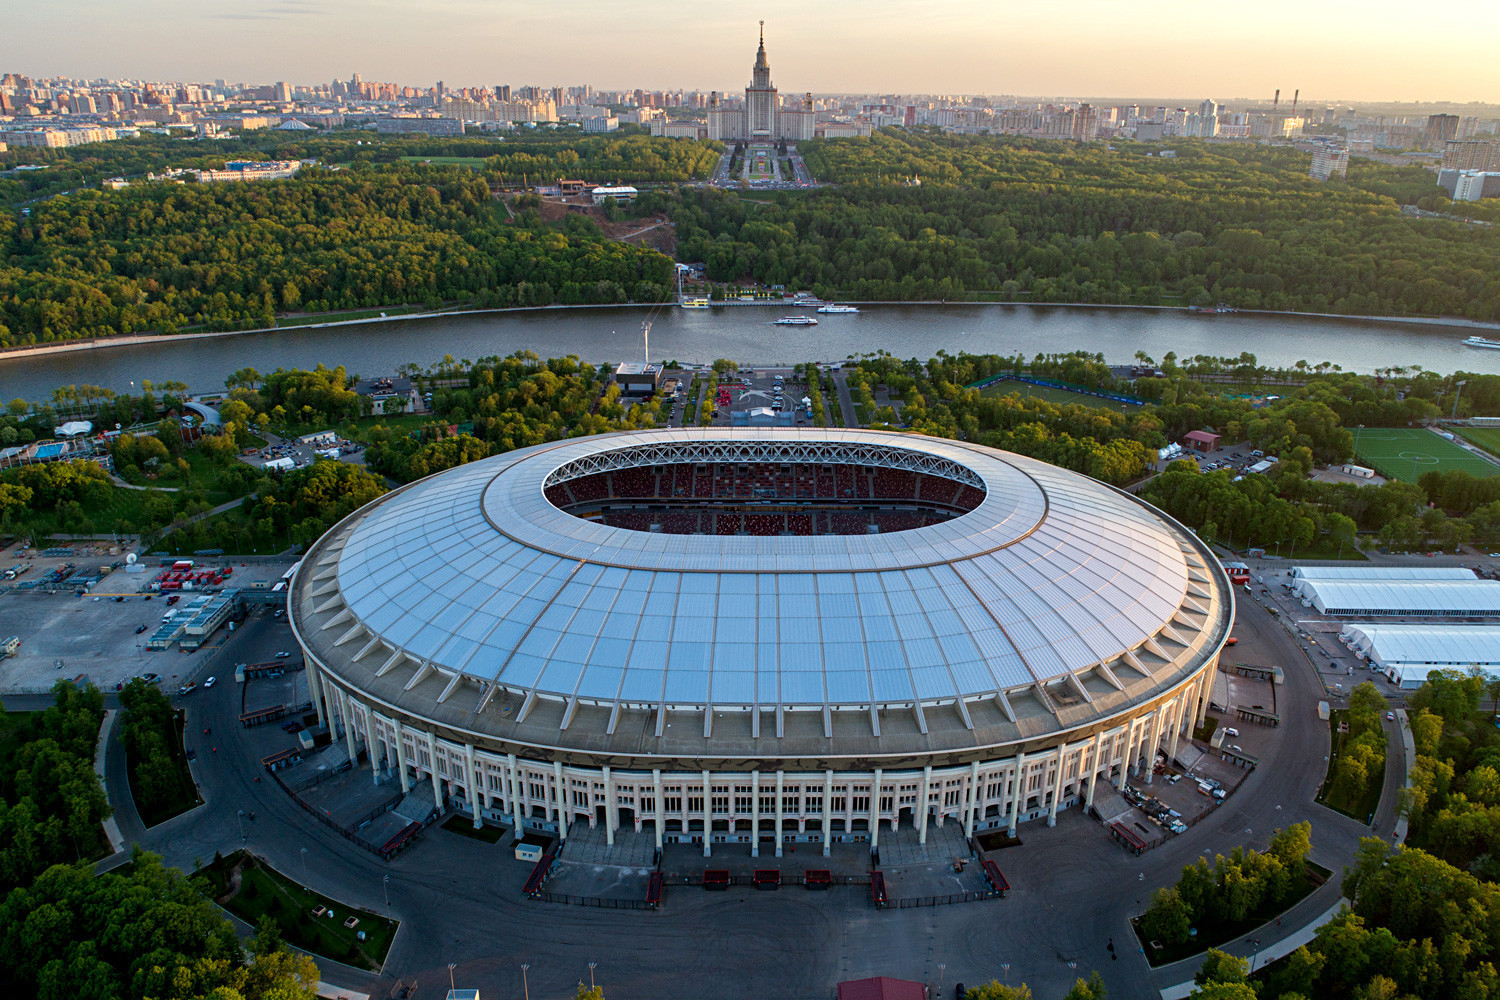 Pogled iz zraka na stadion Lužnjiki

